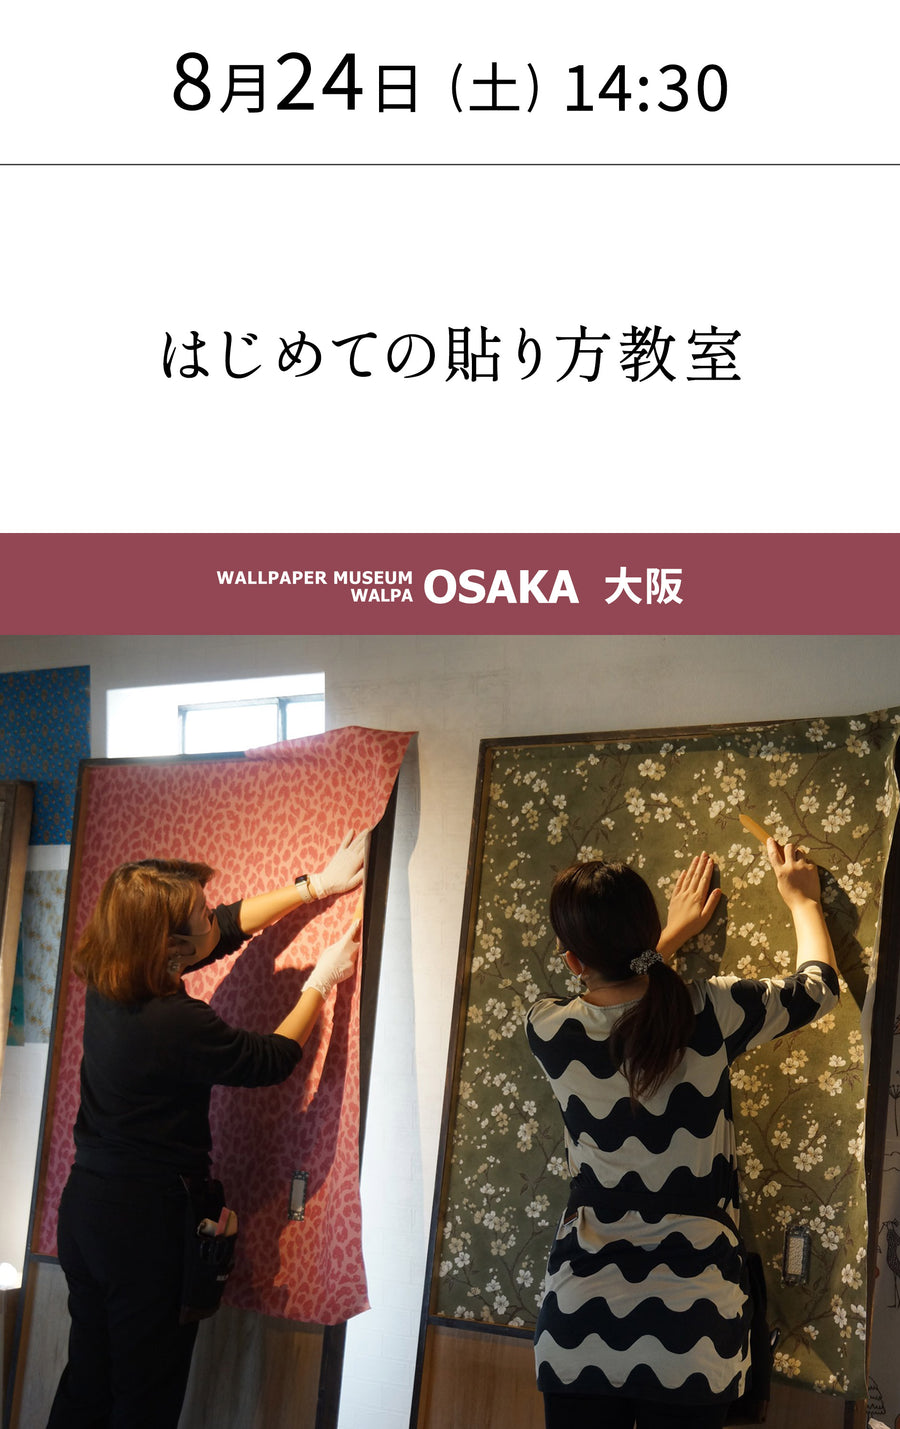 8月24日(土) 14:30～WALLPAPER MUSEUM WALPA / OSAKA ワークショップ 「はじめての貼り方教室」